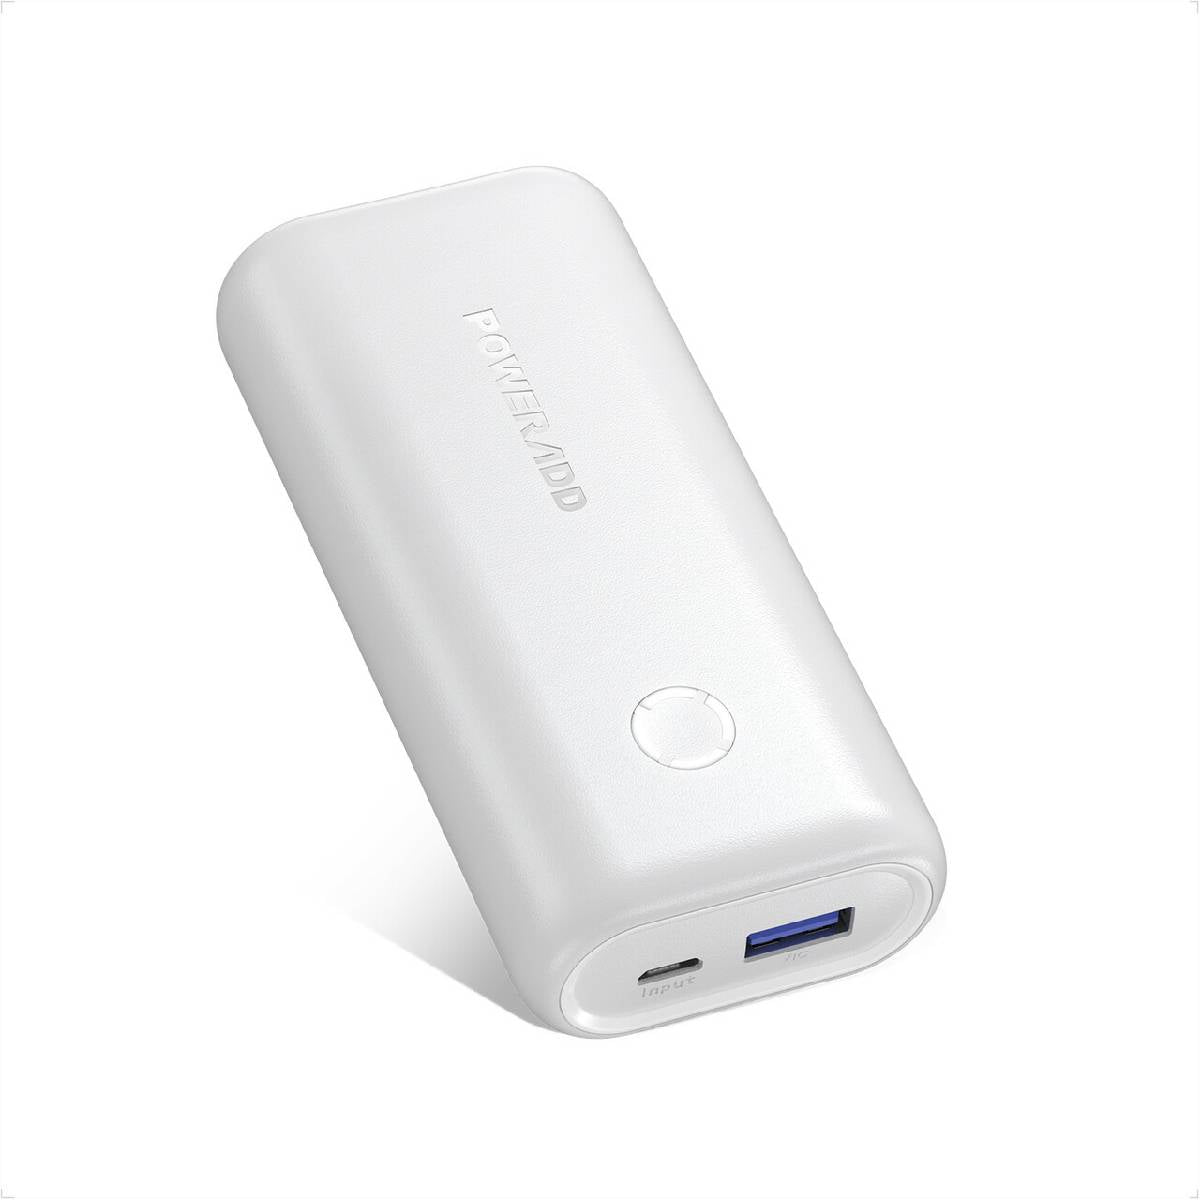  EnergyCell Power Bank 10000mAh, cargador portátil de carga  ultracompacto de alta velocidad, batería externa más pequeña y ligera,  compatible con iPhone 12 11 X Samsung S10, Google, LG, iPad y más